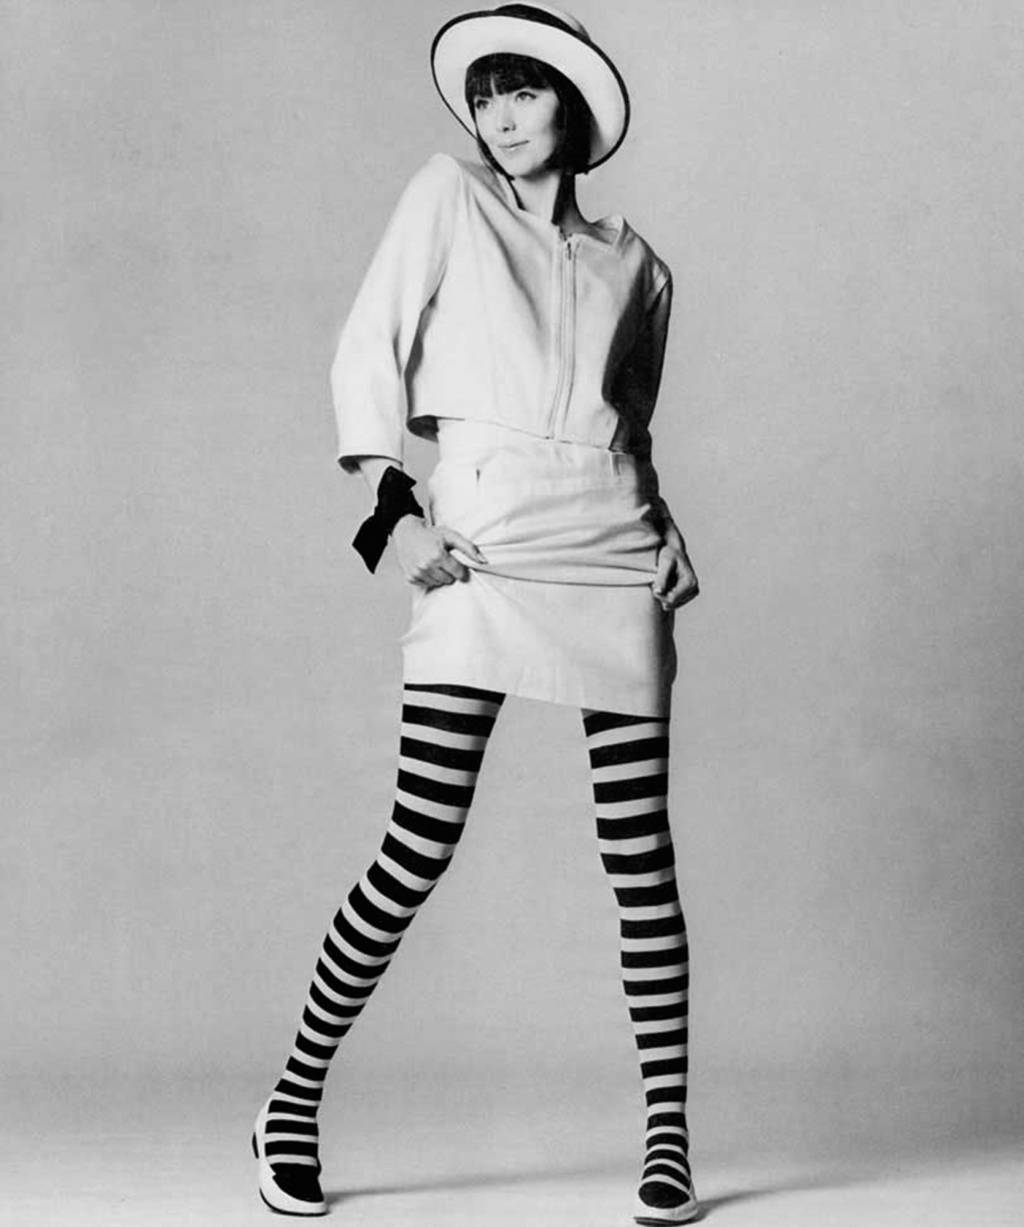 Mary Quant revolucionou a moda com suas minissaias curtíssimas